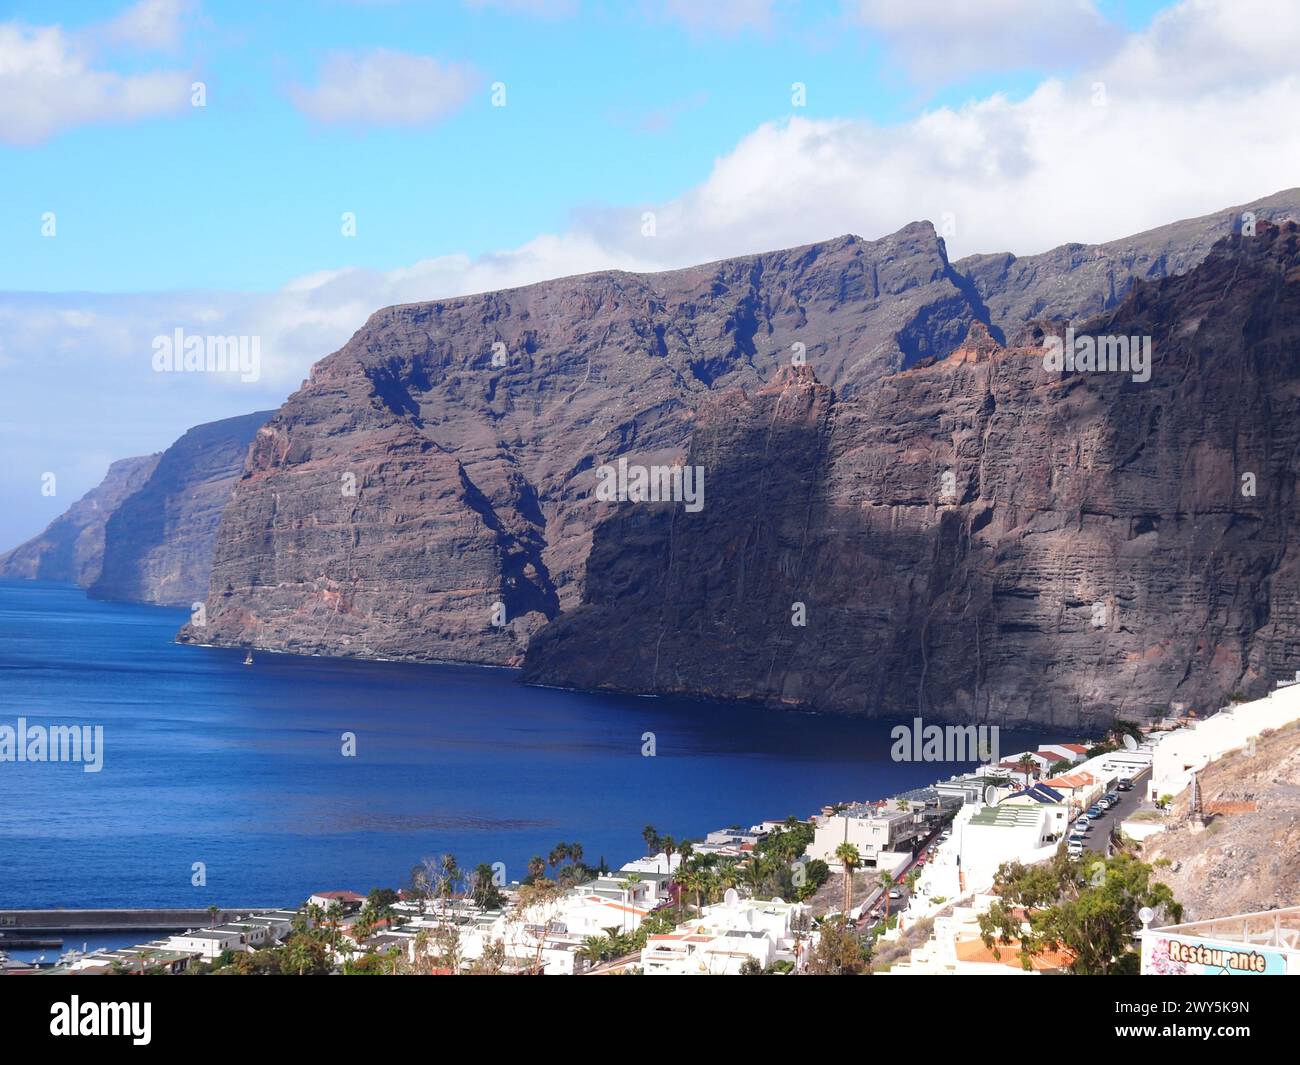 Acantilados de los Gigantes - Cliffs of the Giants (Santiago del Teide, Tenerife, Canary Islands, Spain) Stock Photo